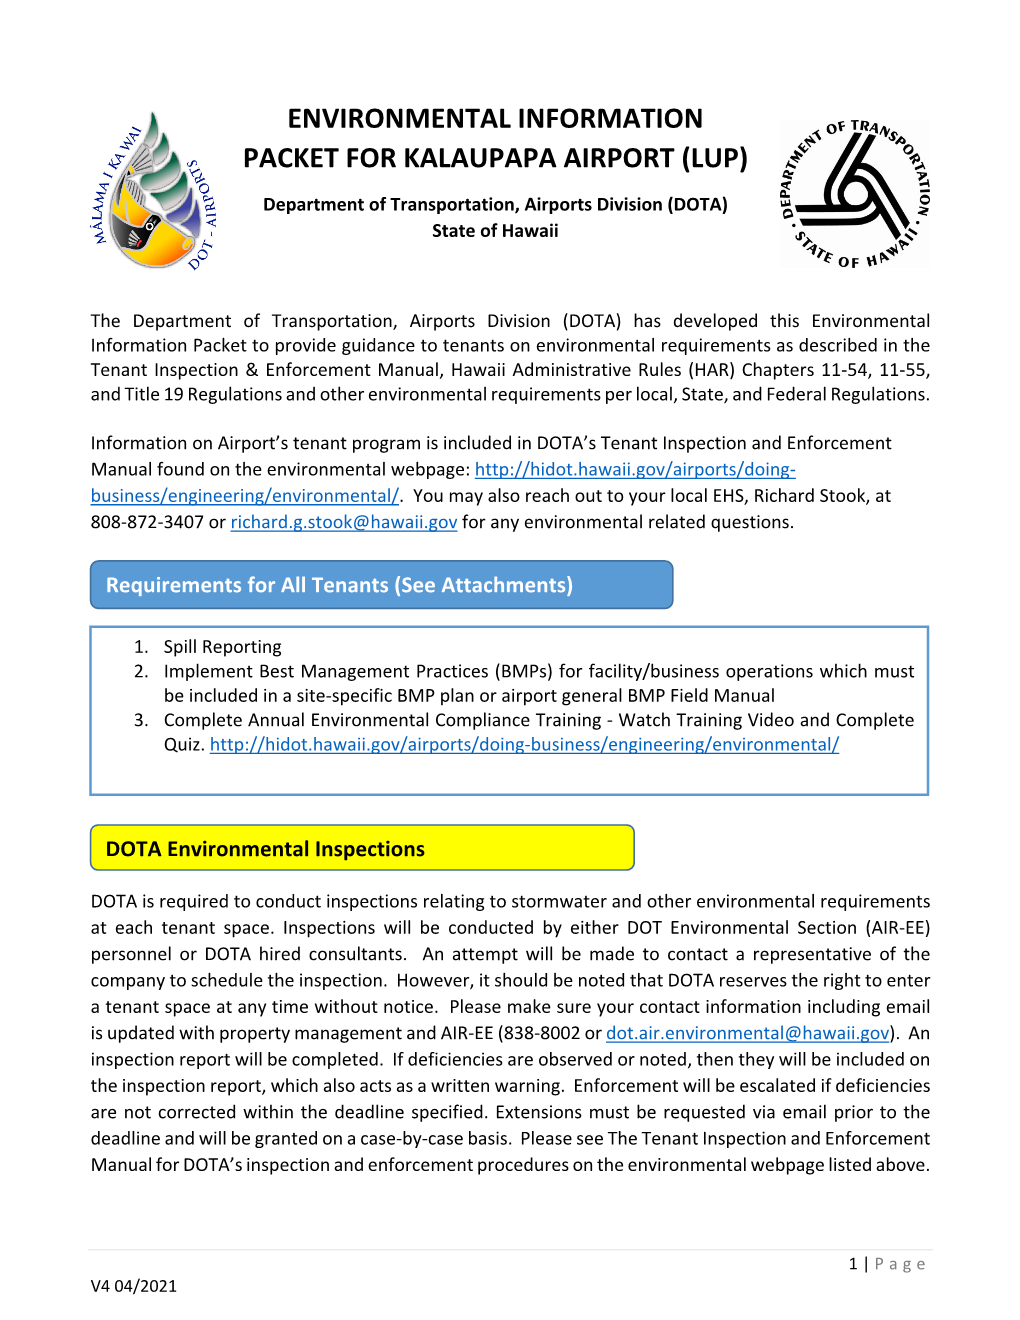 Environmental Information Packet for Kalaupapa